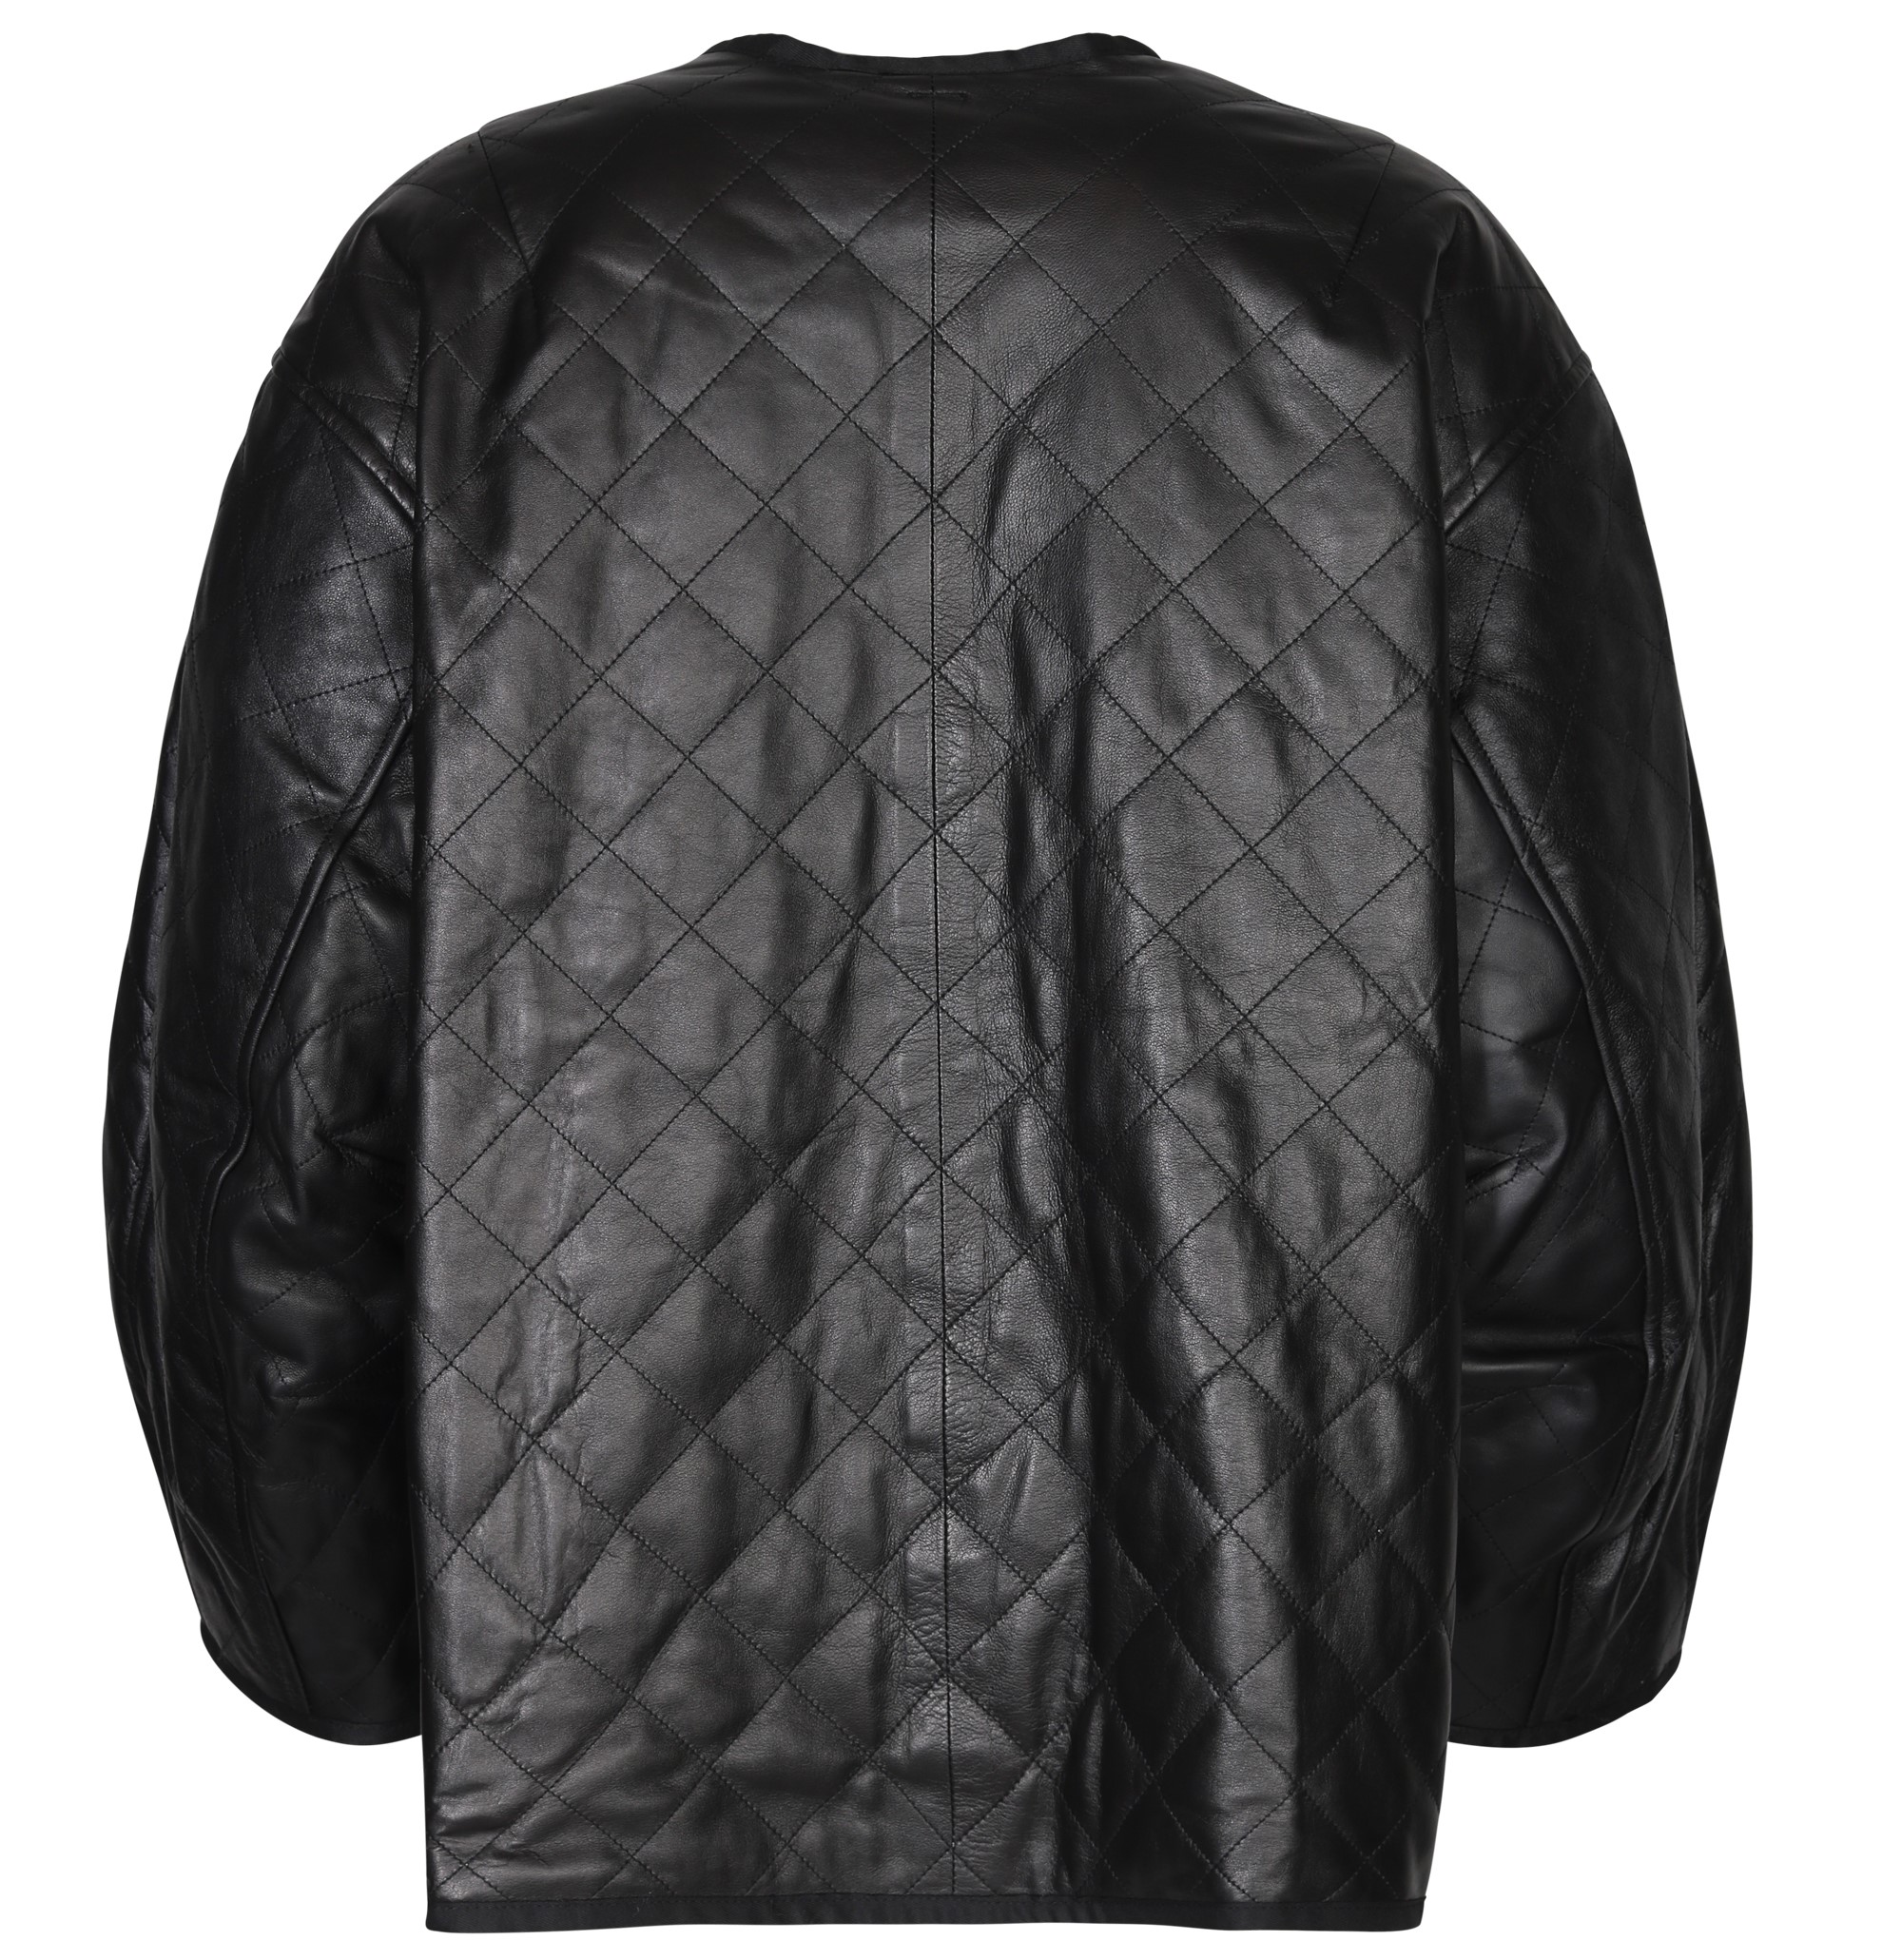 SOCIÉTÉ ANGELIQUE Mira Padded Leather Vest in Black M